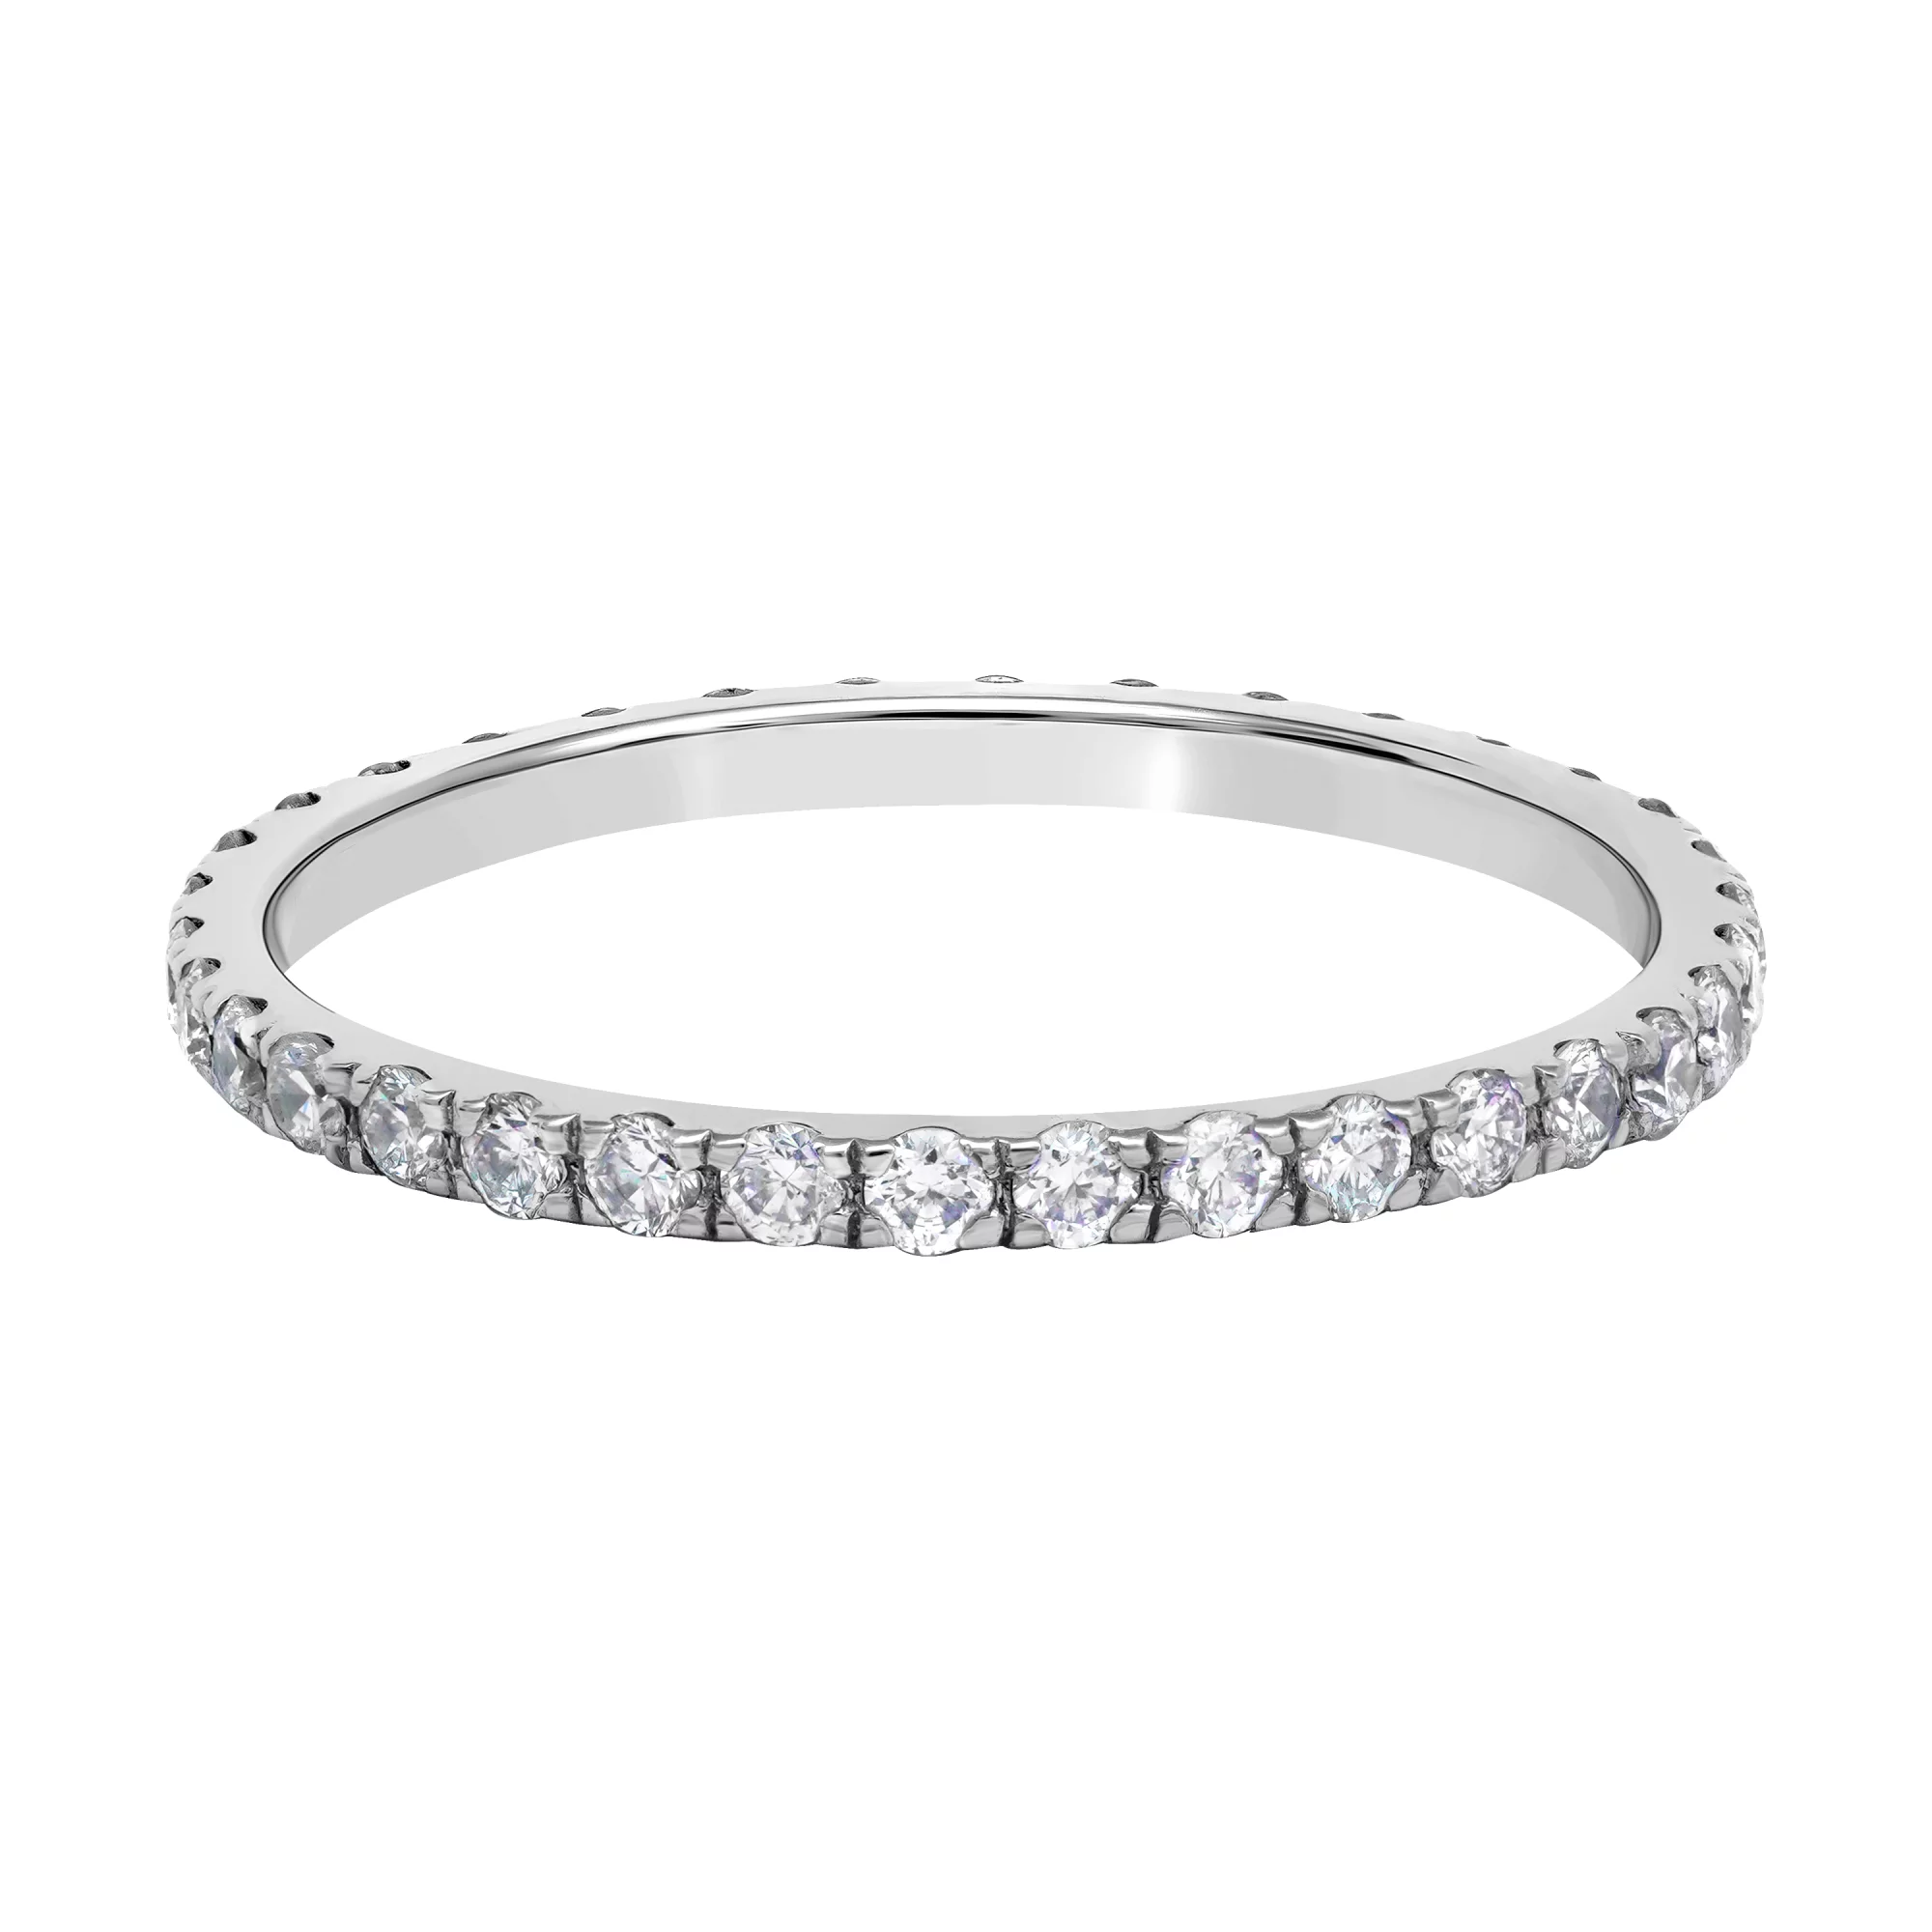 Тонкое кольцо в белом золоте с дорожкой бриллиантов - 1730941 – изображение 2